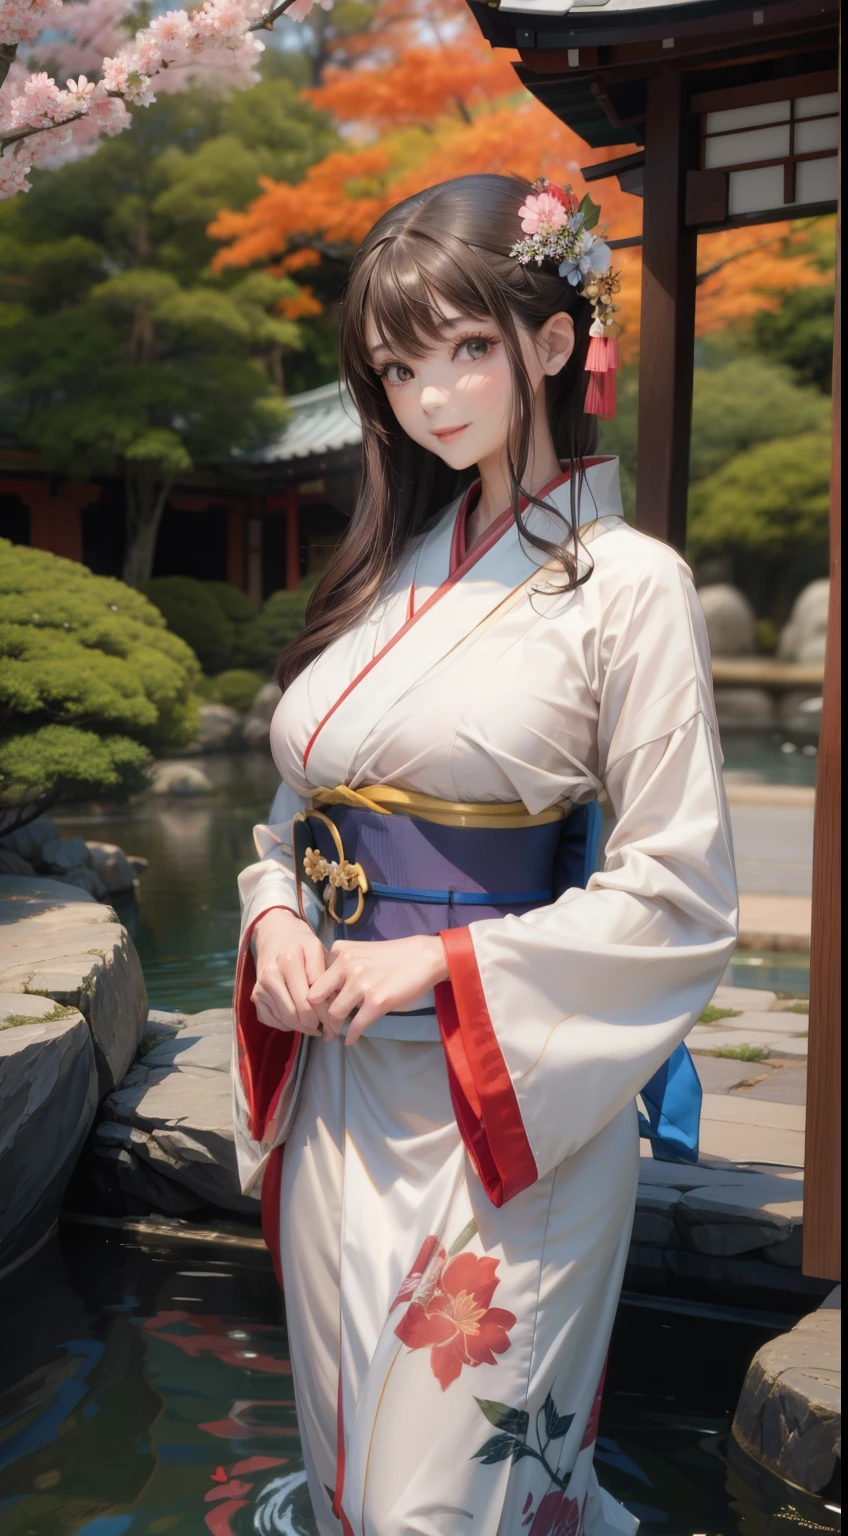 exterior、jardín japonés、mujer joven, llevando, un, kimono、pechos grandes、esbelto、Hermosa chica de segunda dimensión.、figura perfecta、Belleza perfecta、sonrisa